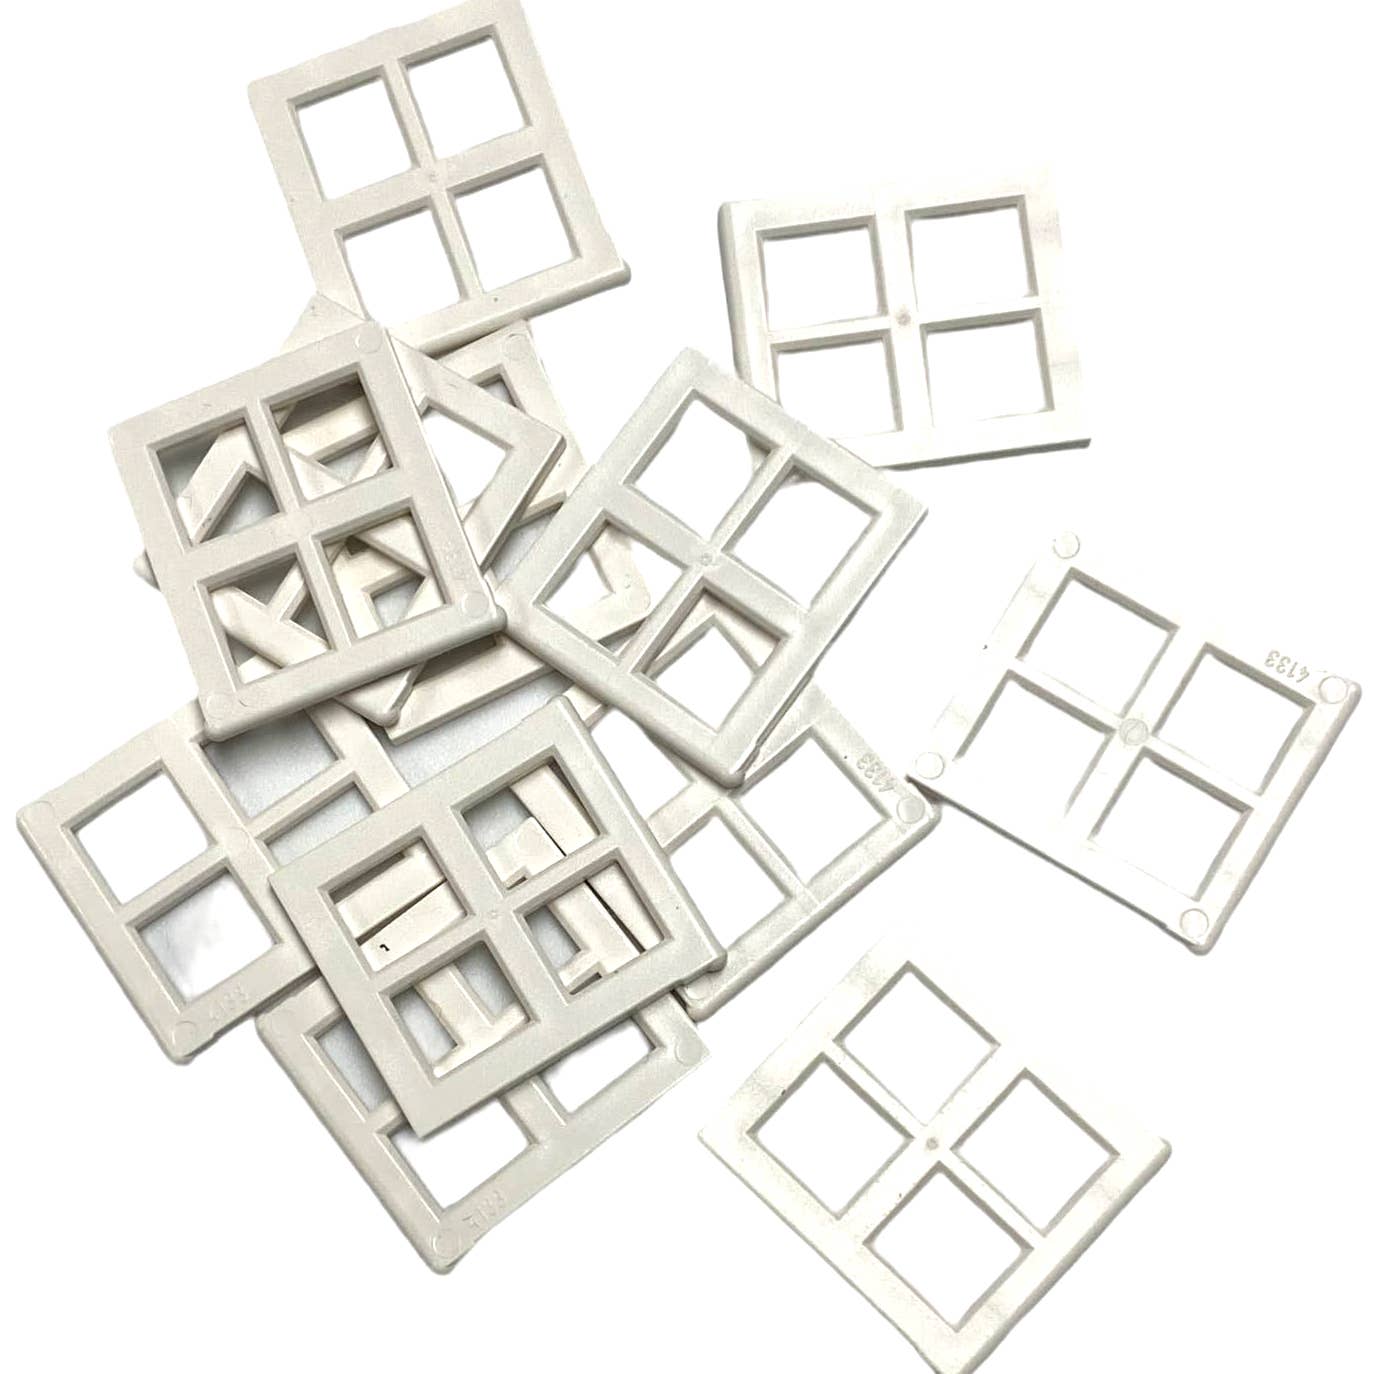 4133 Lego 4 panel/Pane for Window 2x4x3 White  12 Pieces